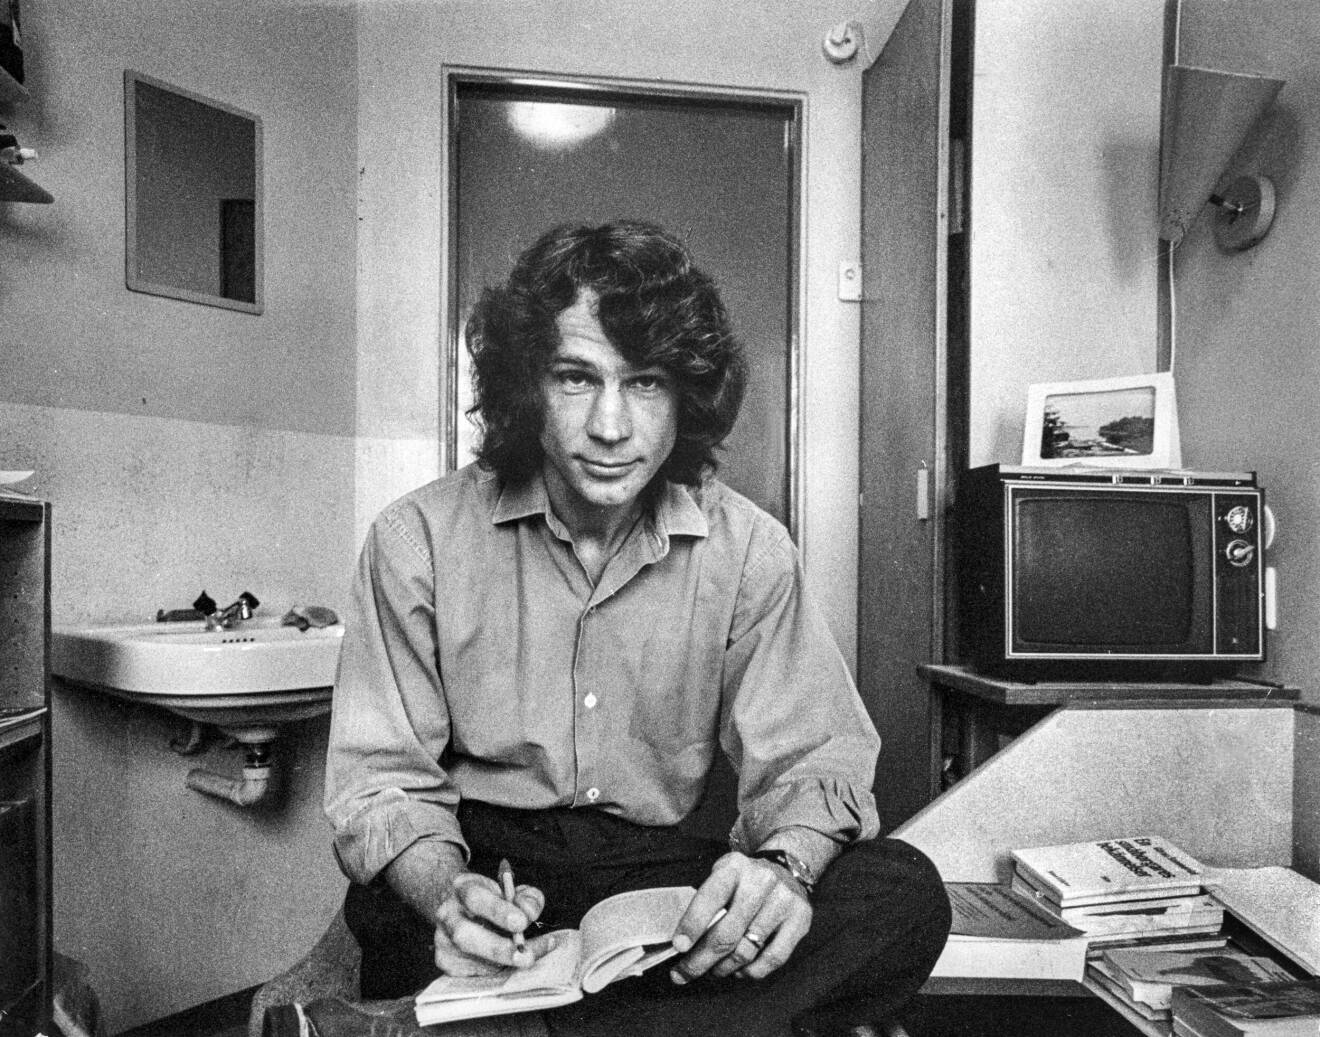 Ekobrottslingen och journalisten Tony Rosendahl på Kumlaanstalten 1974, svartvitt foto.